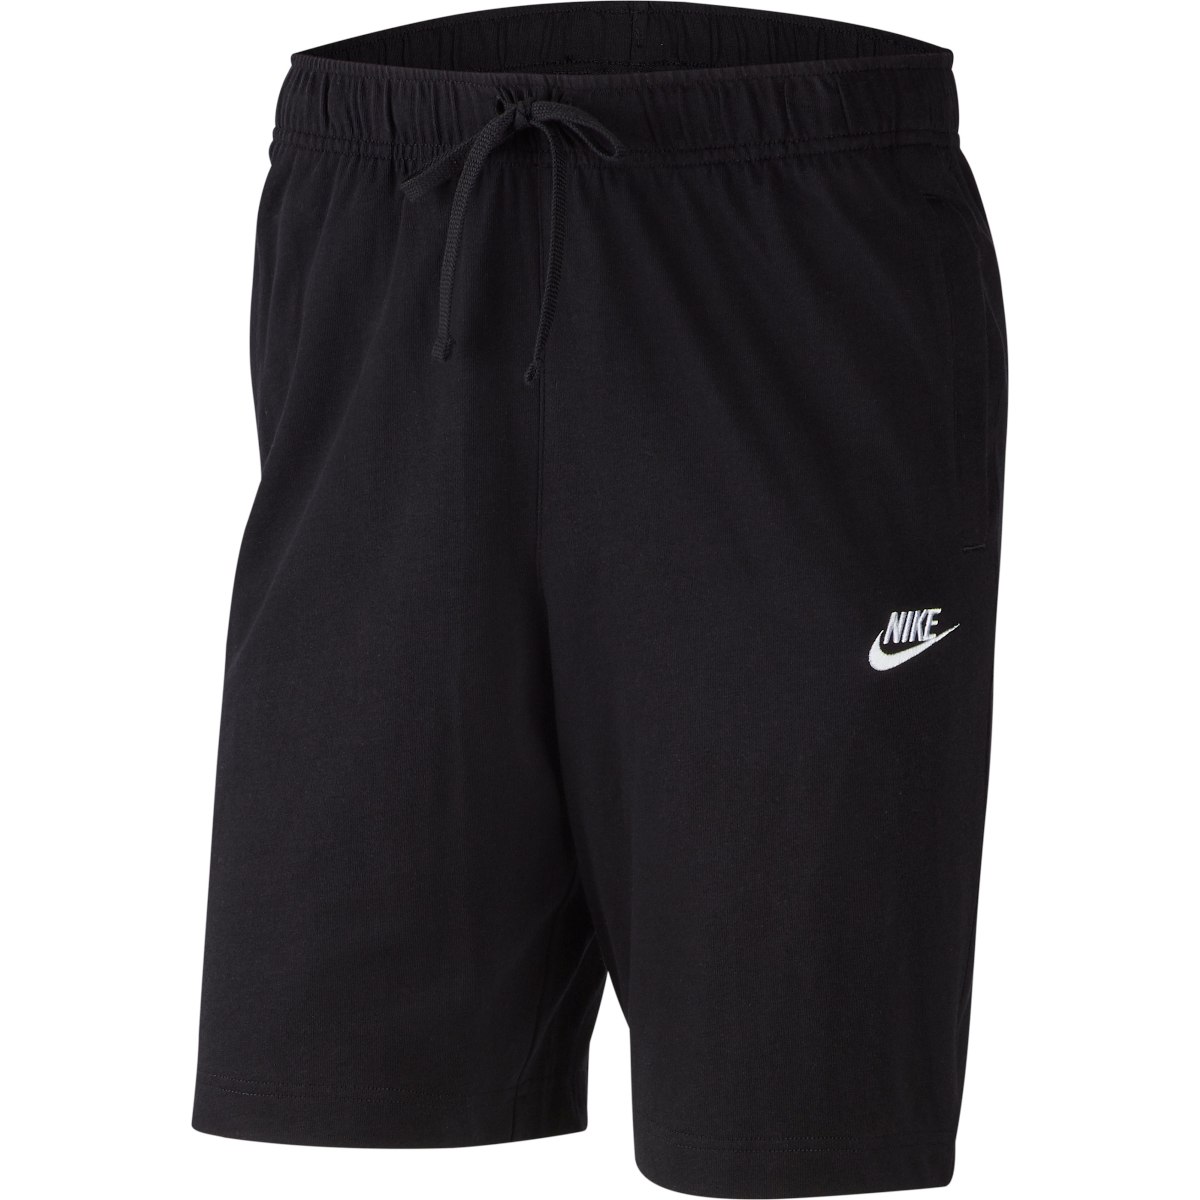 Produktbild von Nike Sportswear Club Herrenshorts - schwarz/weiß BV2772-010